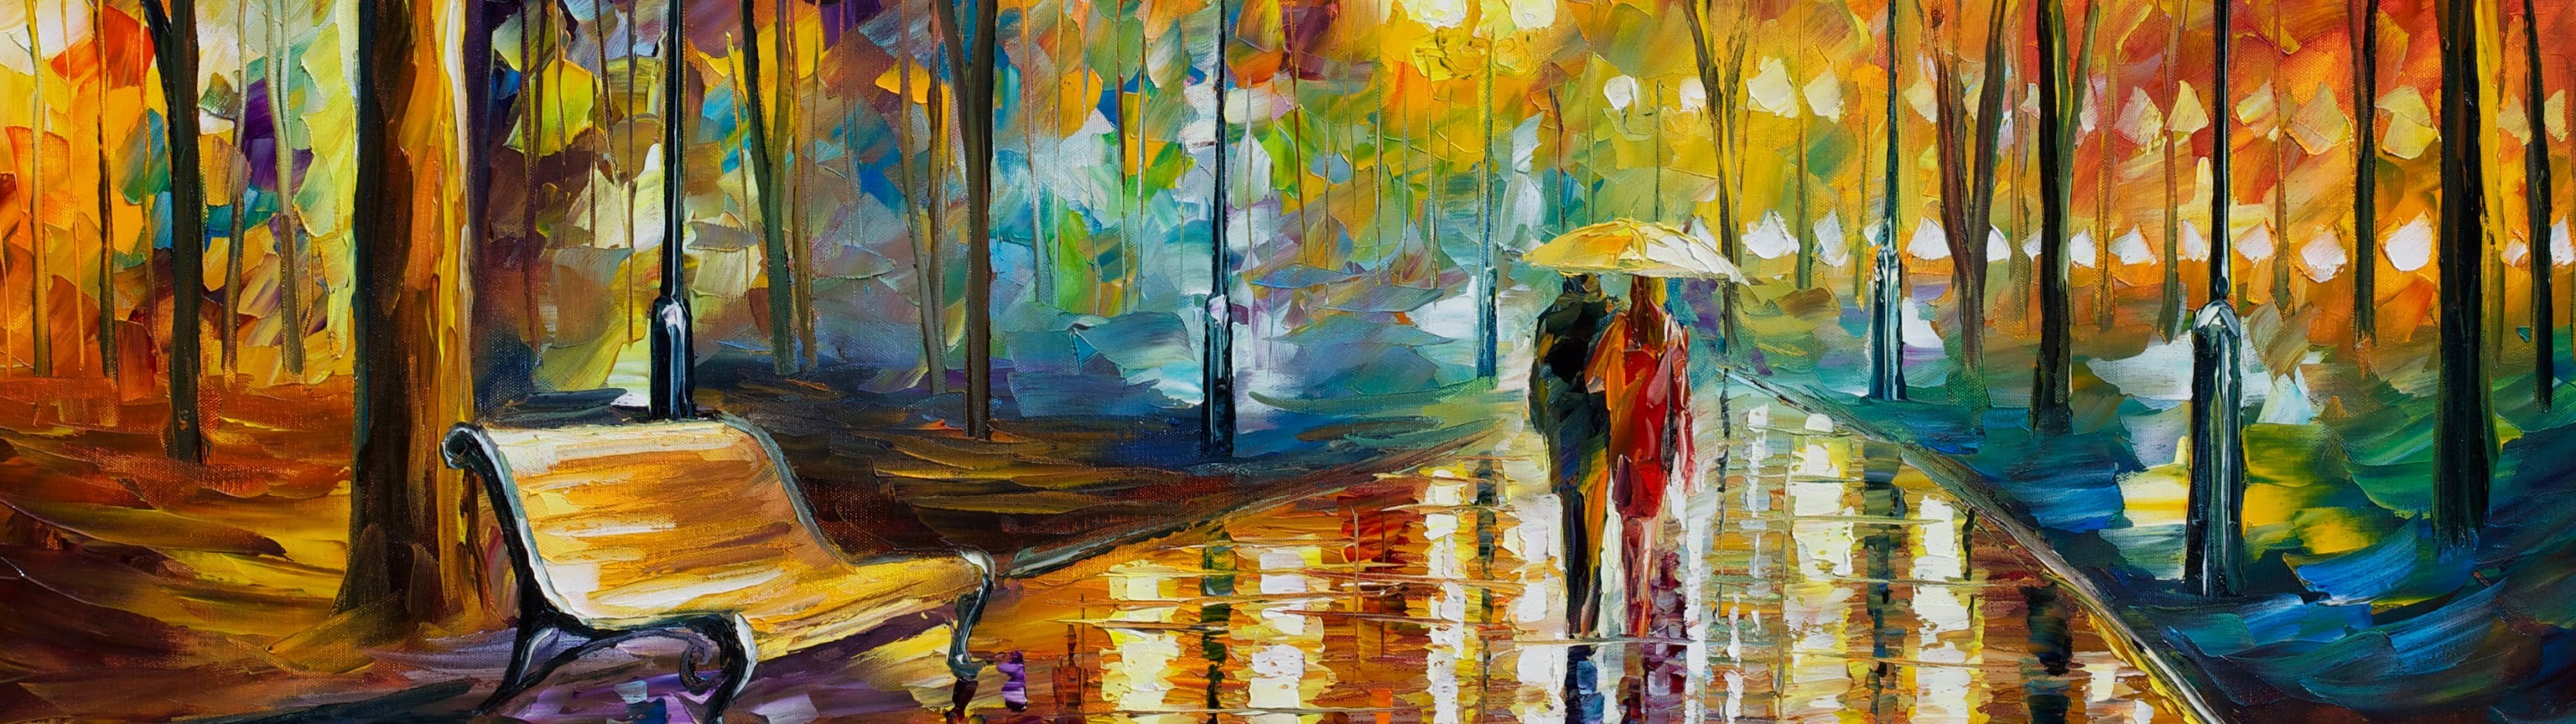 Painting Leonid Afremov Artwork Park Umbrella 3344x940